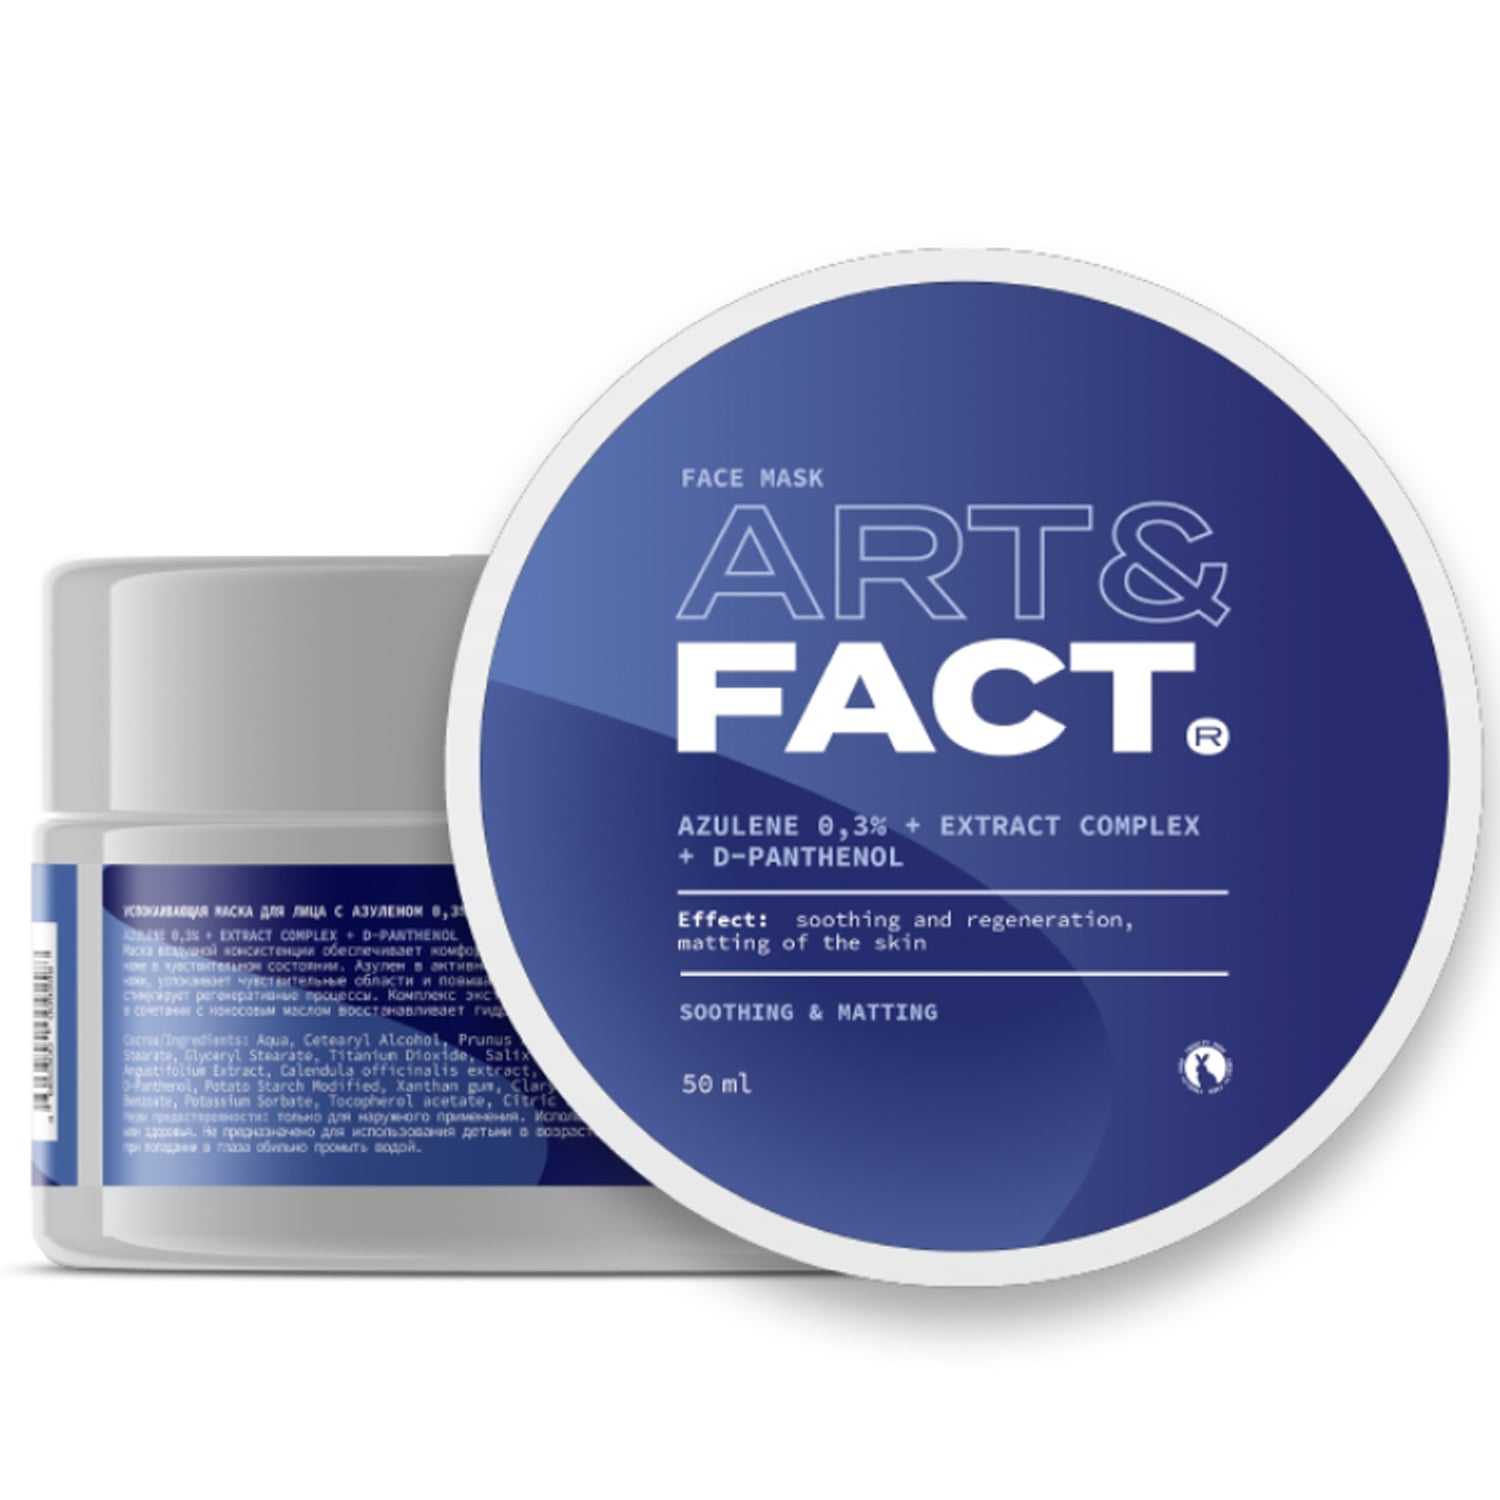 Art&Fact Успокаивающая маска с азуленом 0,3%, комплексом экстрактов и Д-пантенолом для лица, 50 мл (Art&Fact, Восстановление)